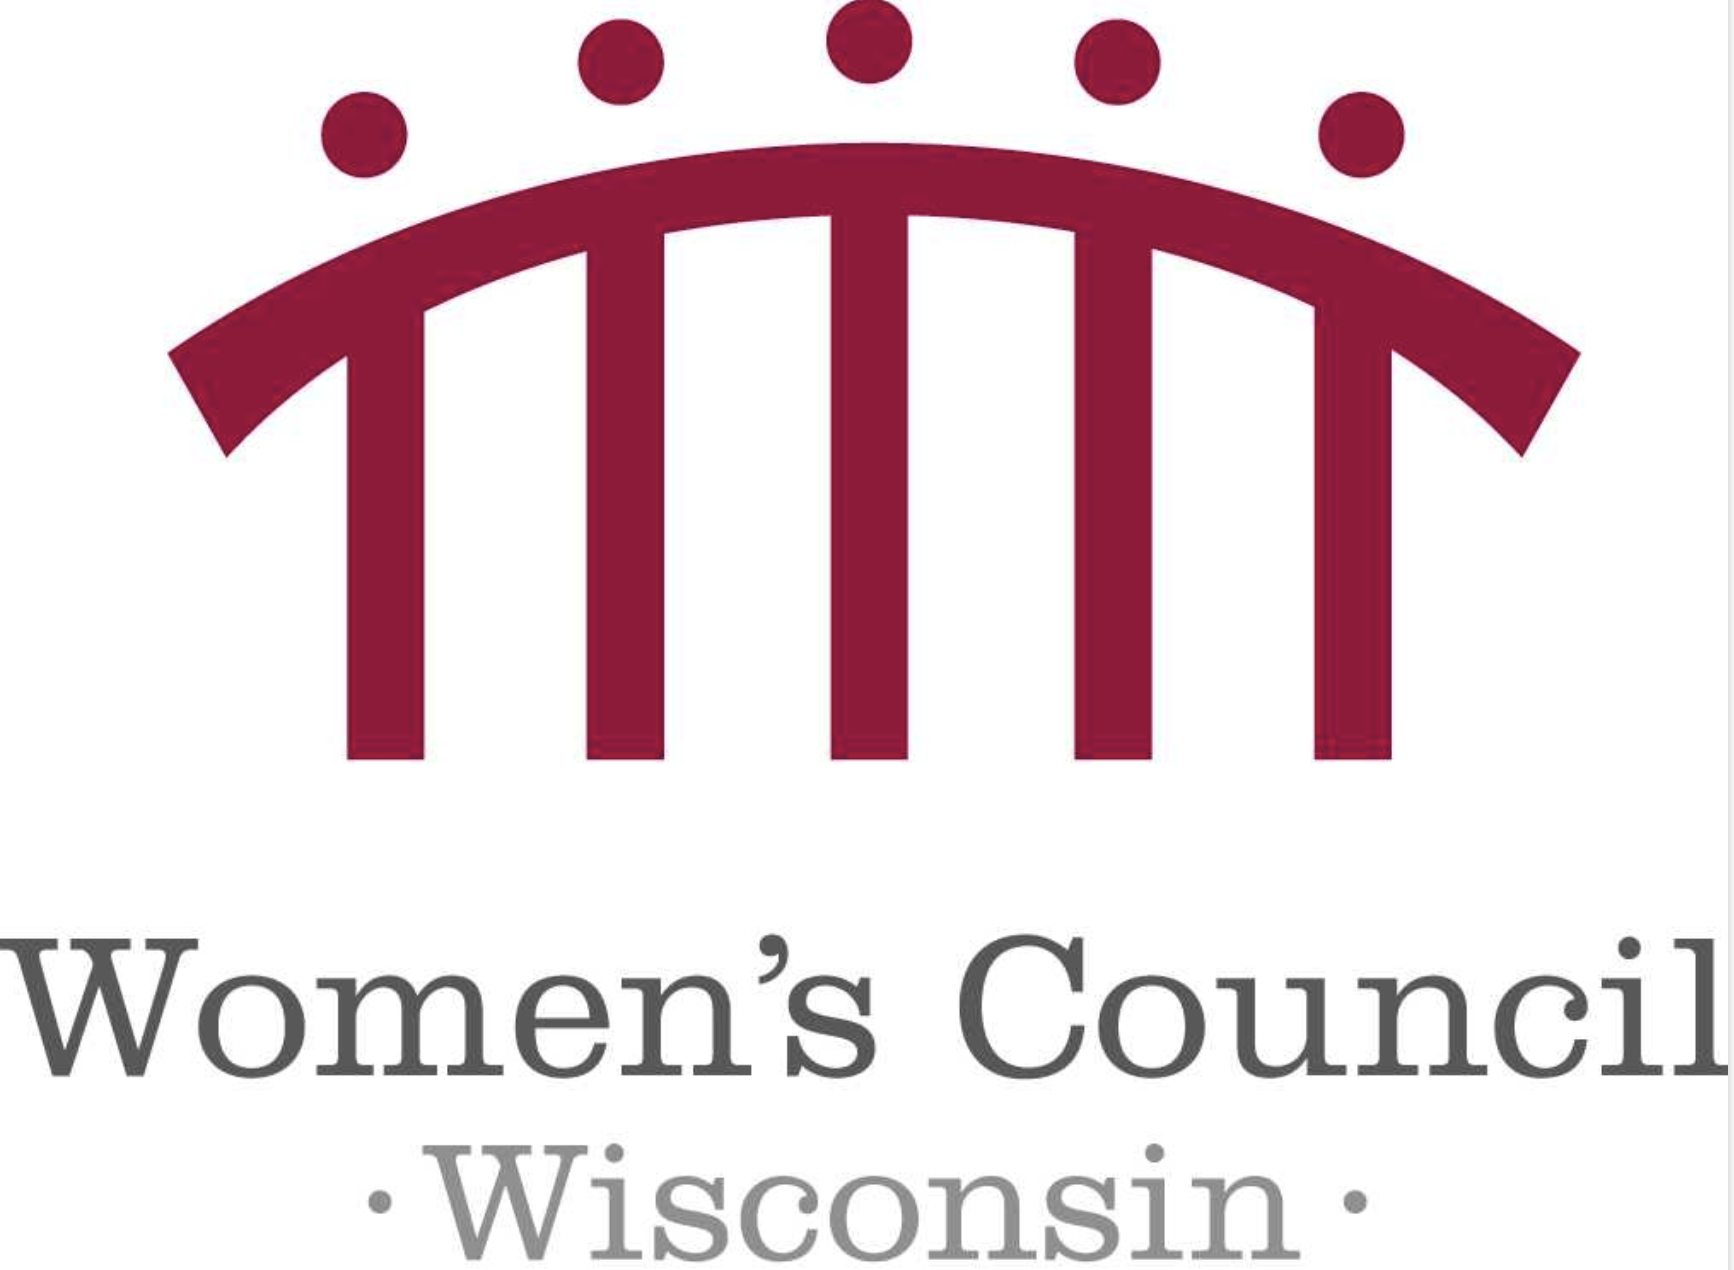 Women Wiscosin Council